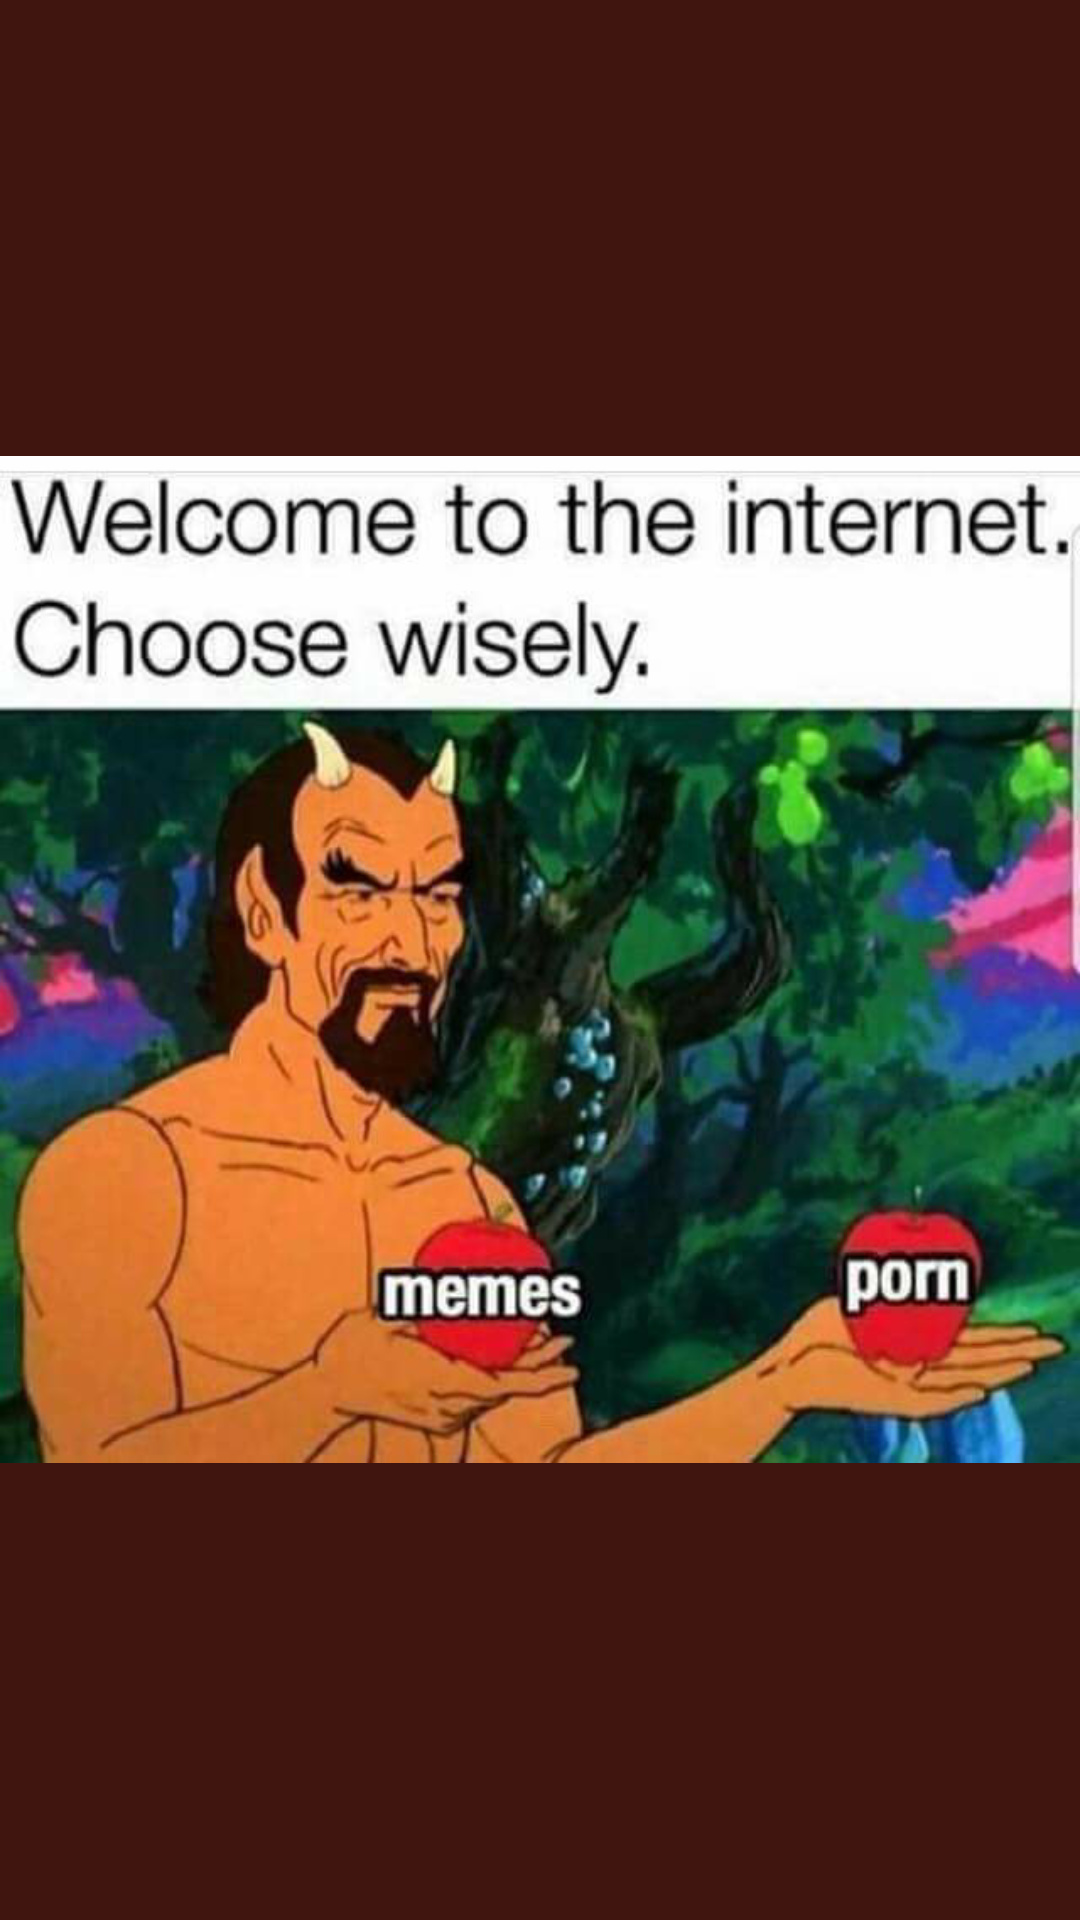 Solo hay 2 opciones - meme